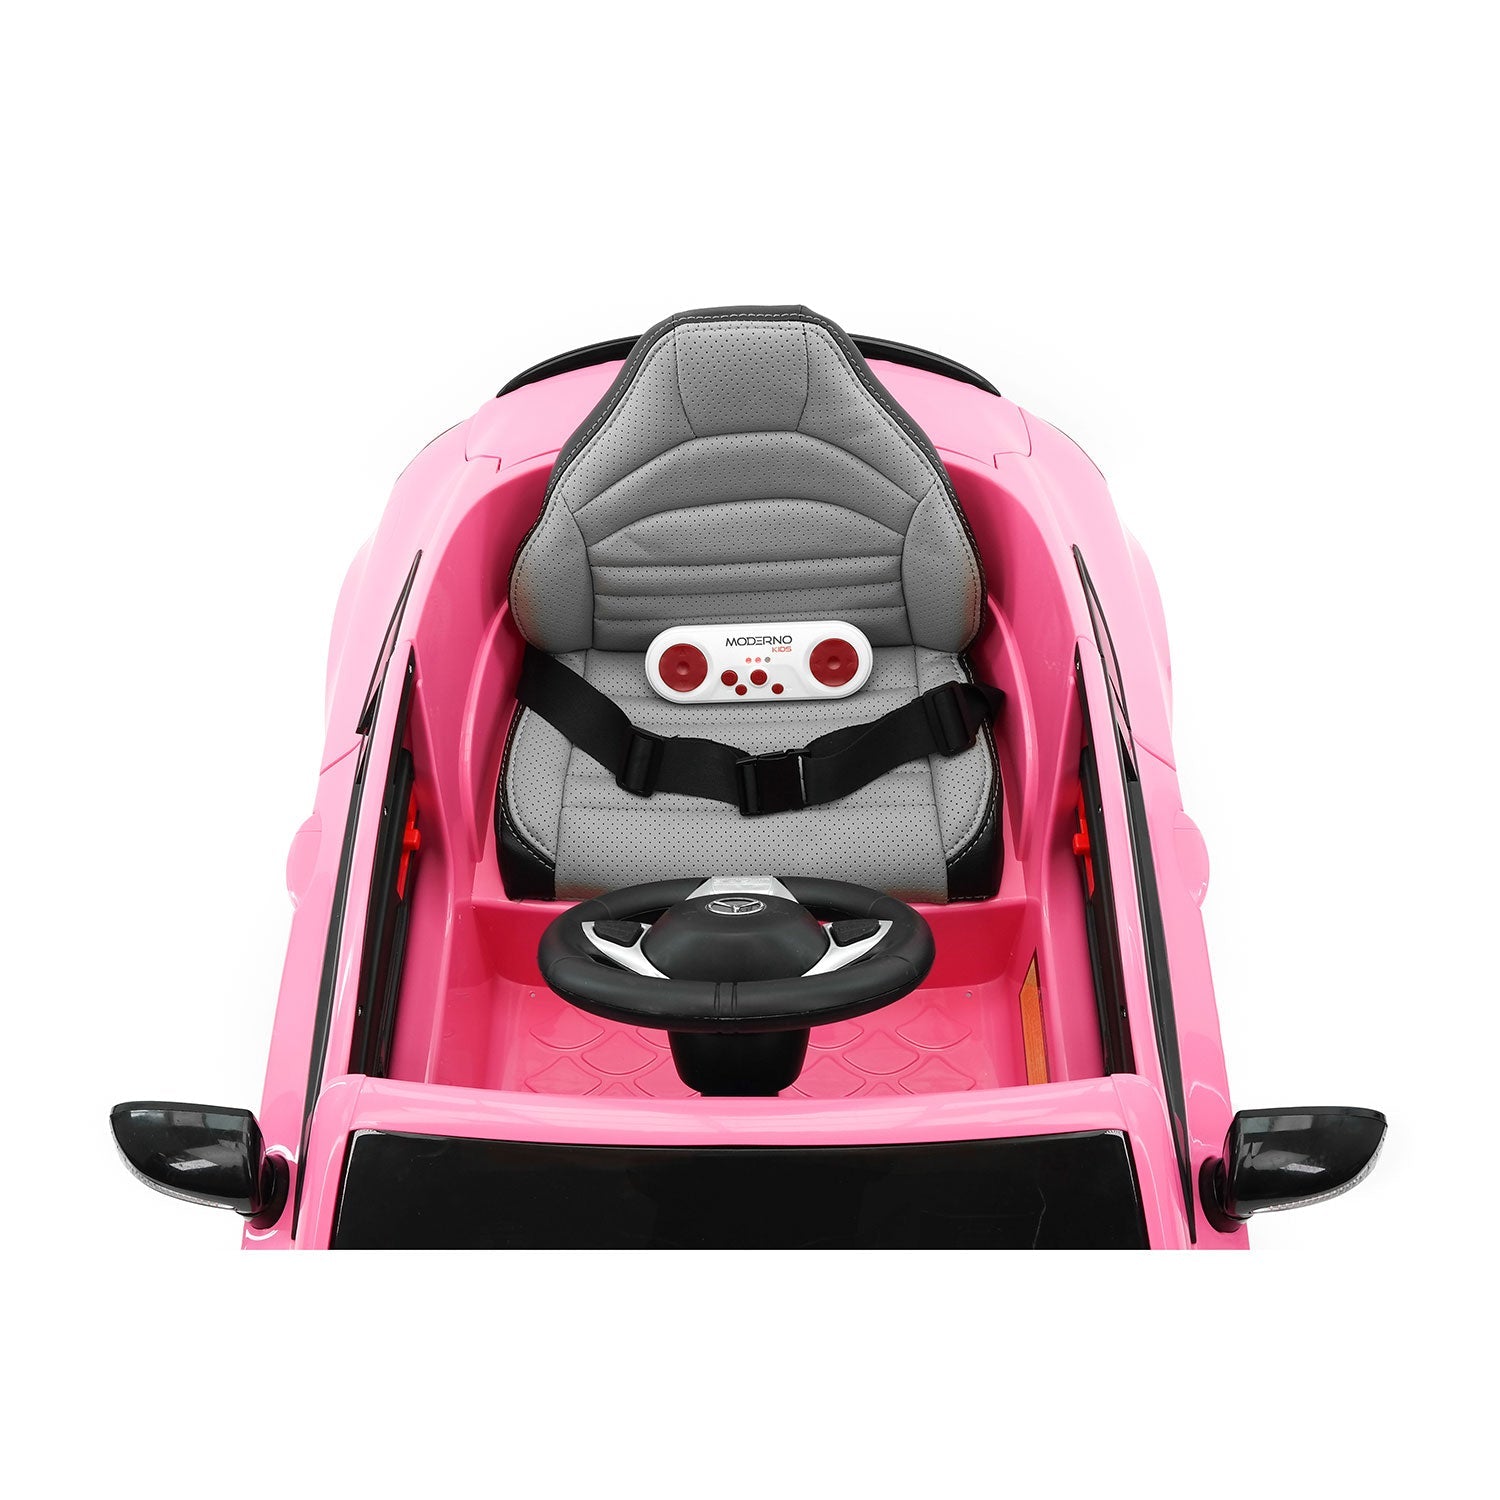 Mercedes C63s 12v Kids Ride-on Car With R/c Parental Remote | Pink